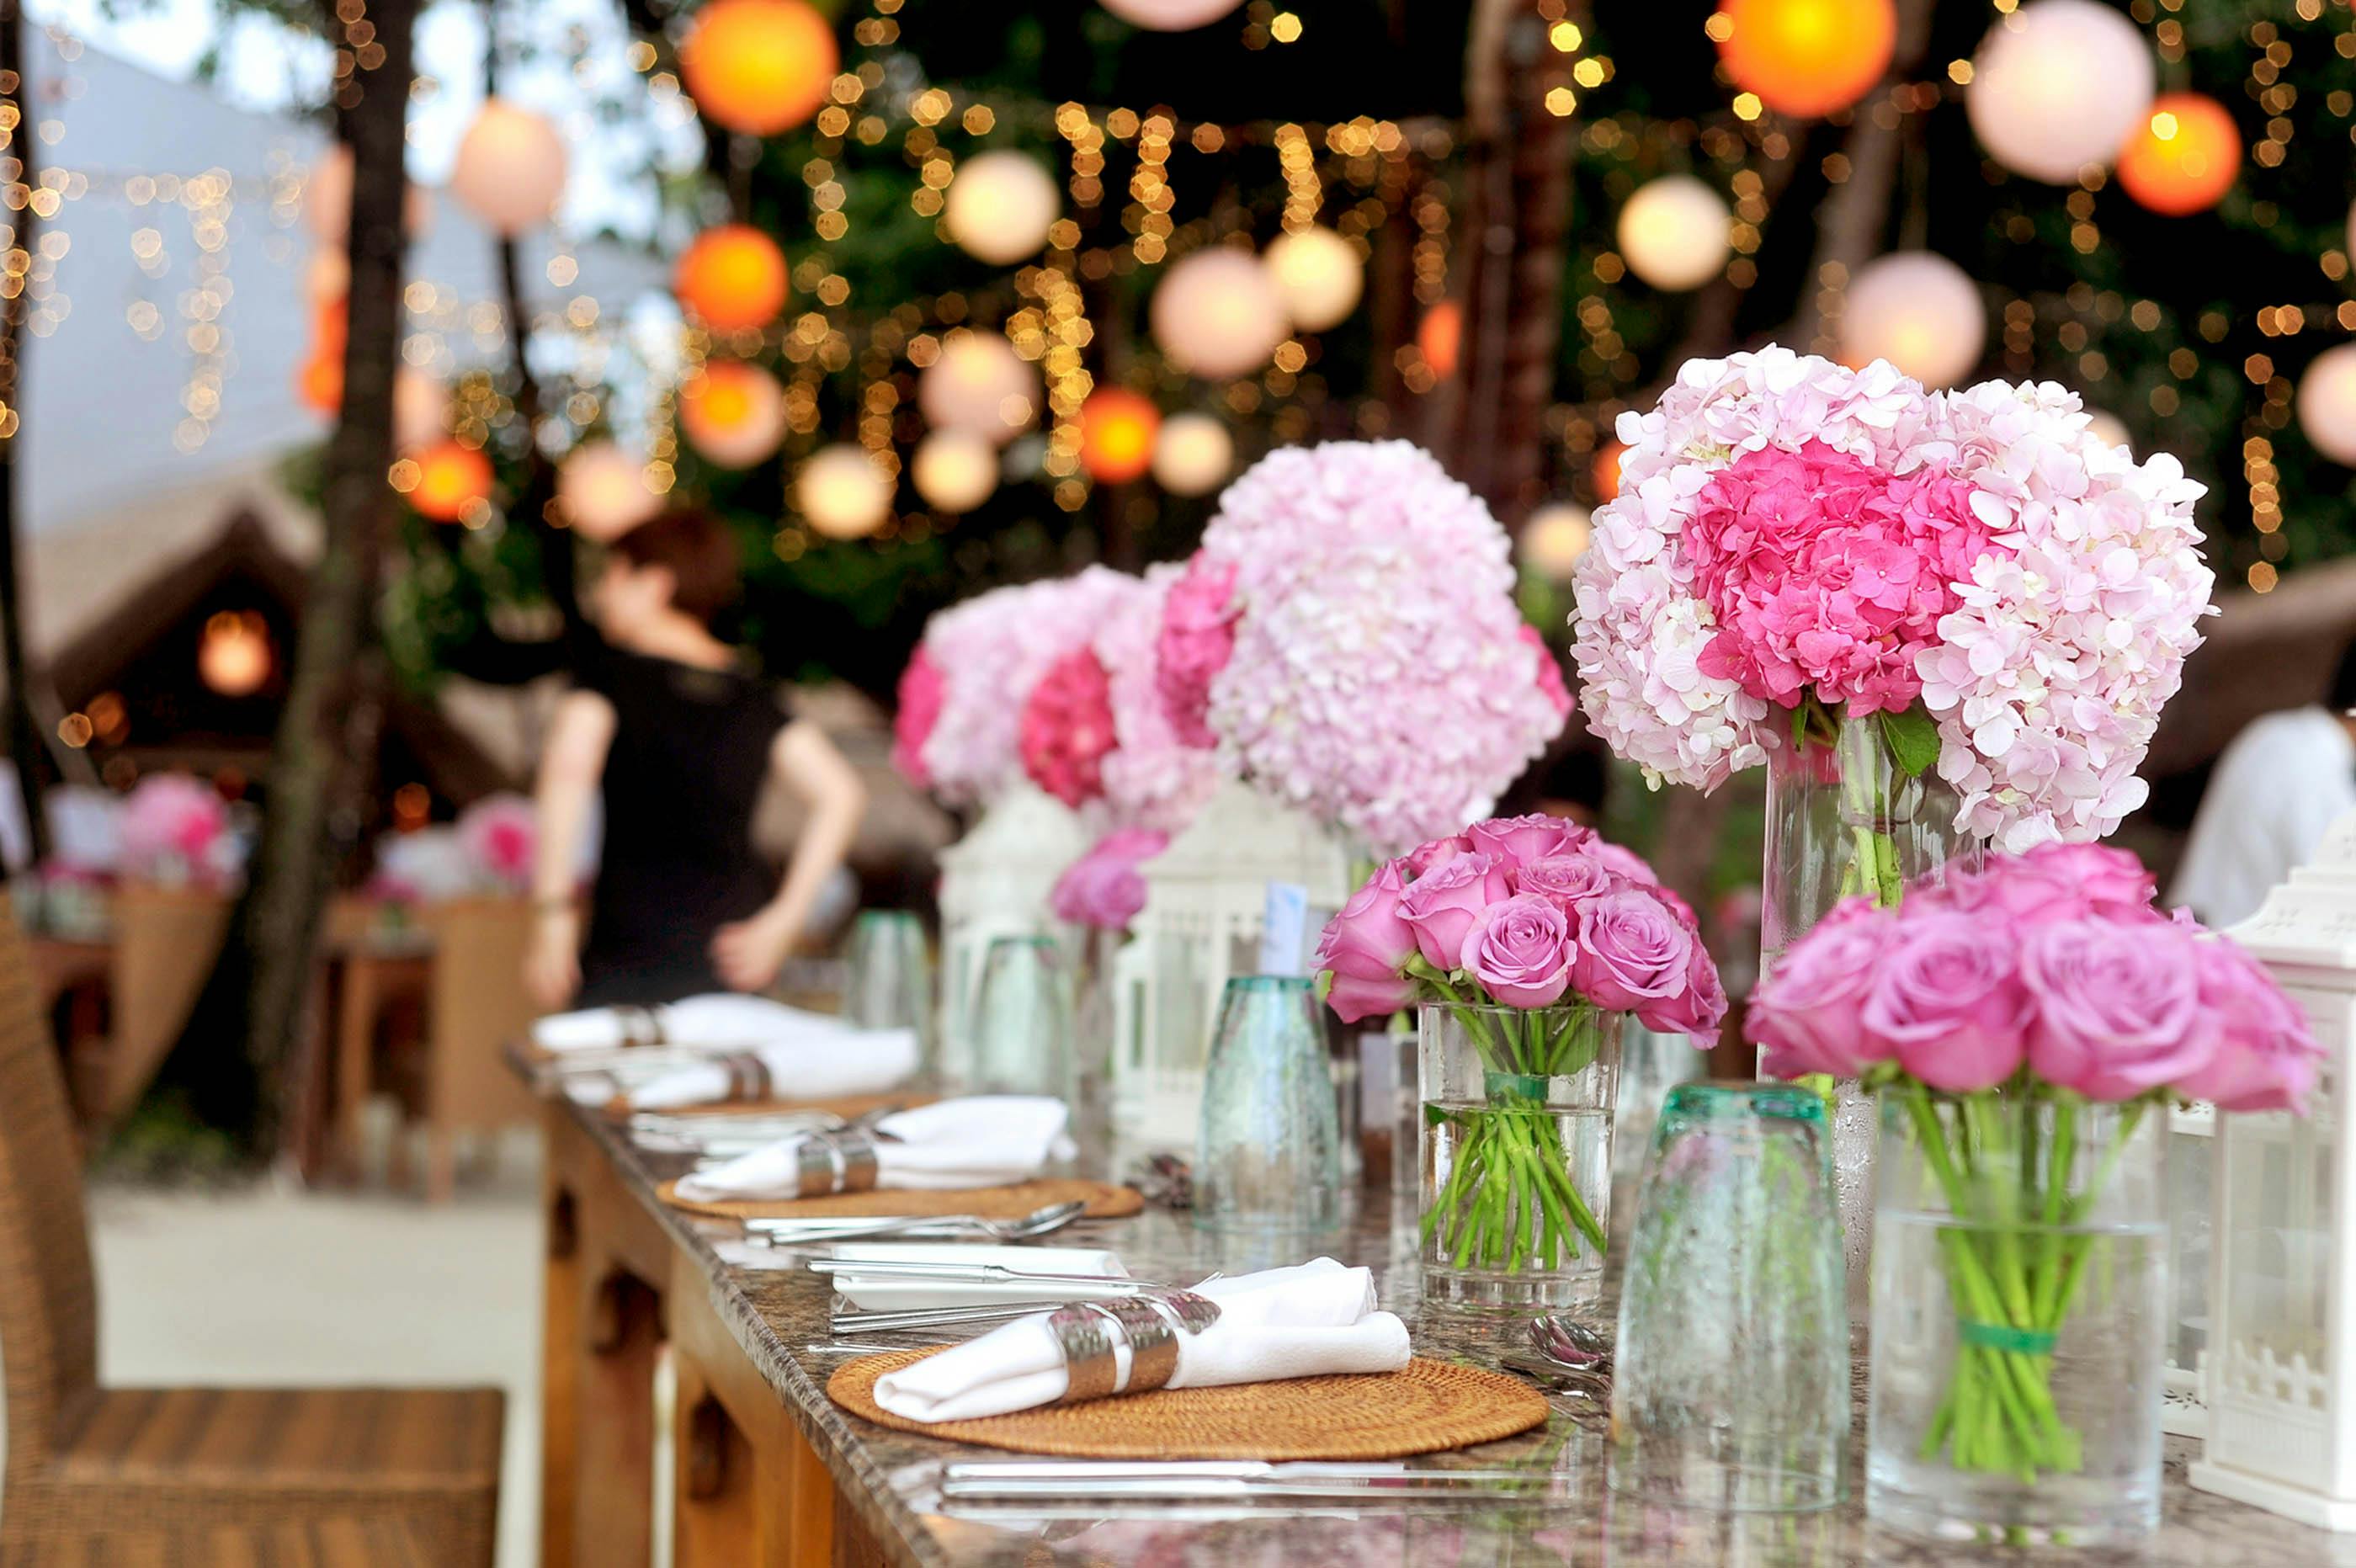 Un lieu décoré de fleurs et de tables | Source : Pexels